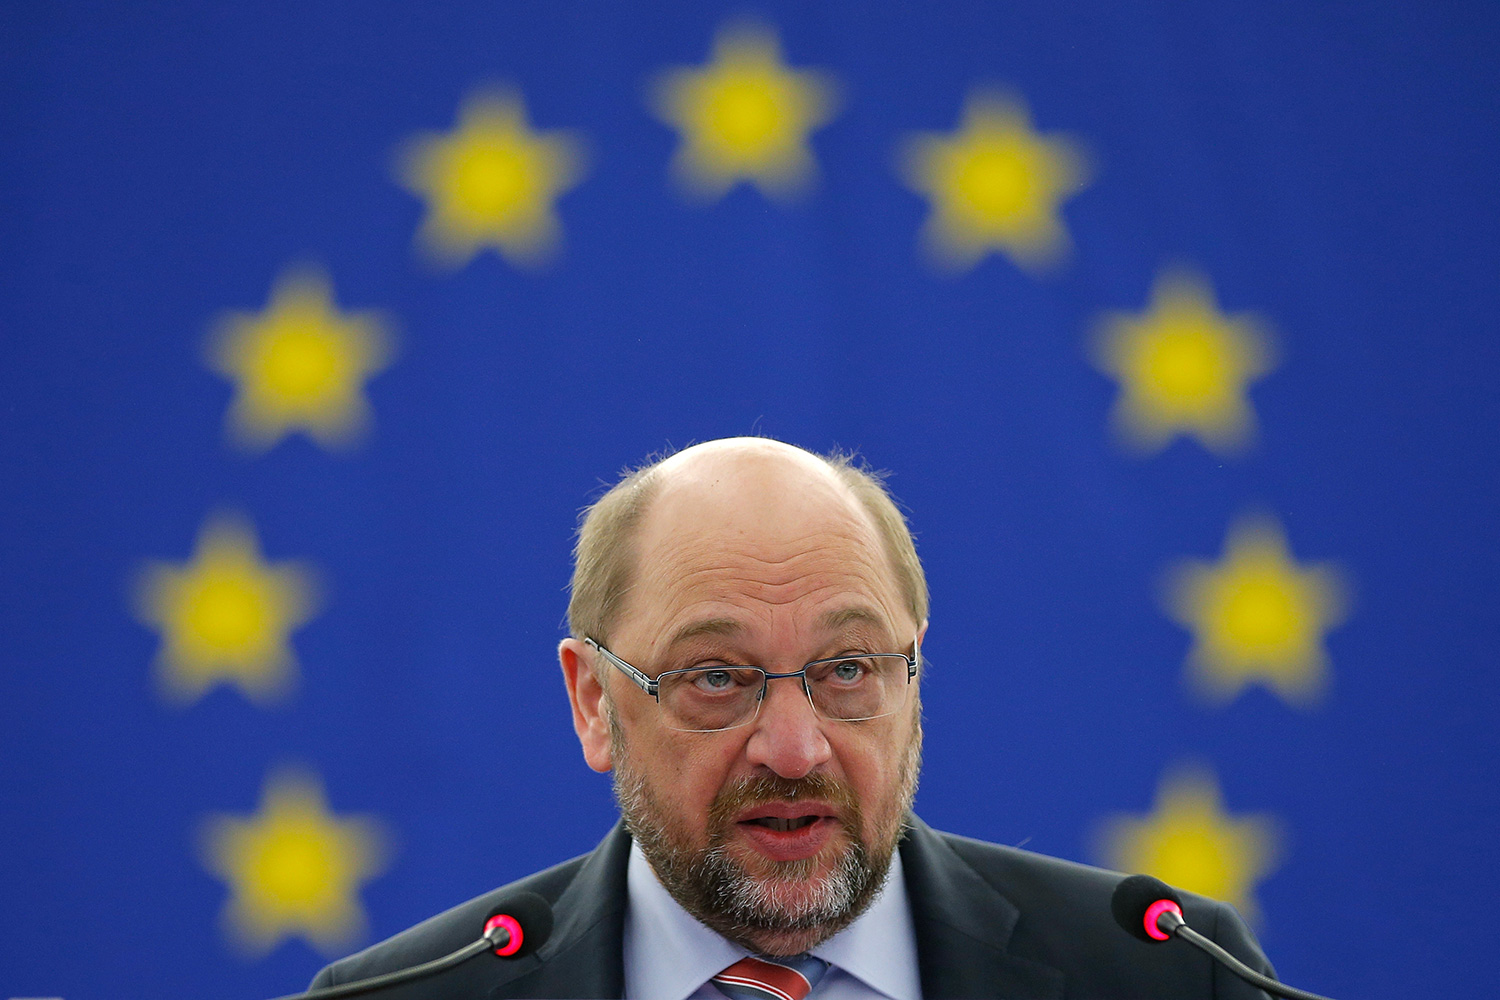 Martin Schulz deja la Eurocámara y vuelve a la política alemana